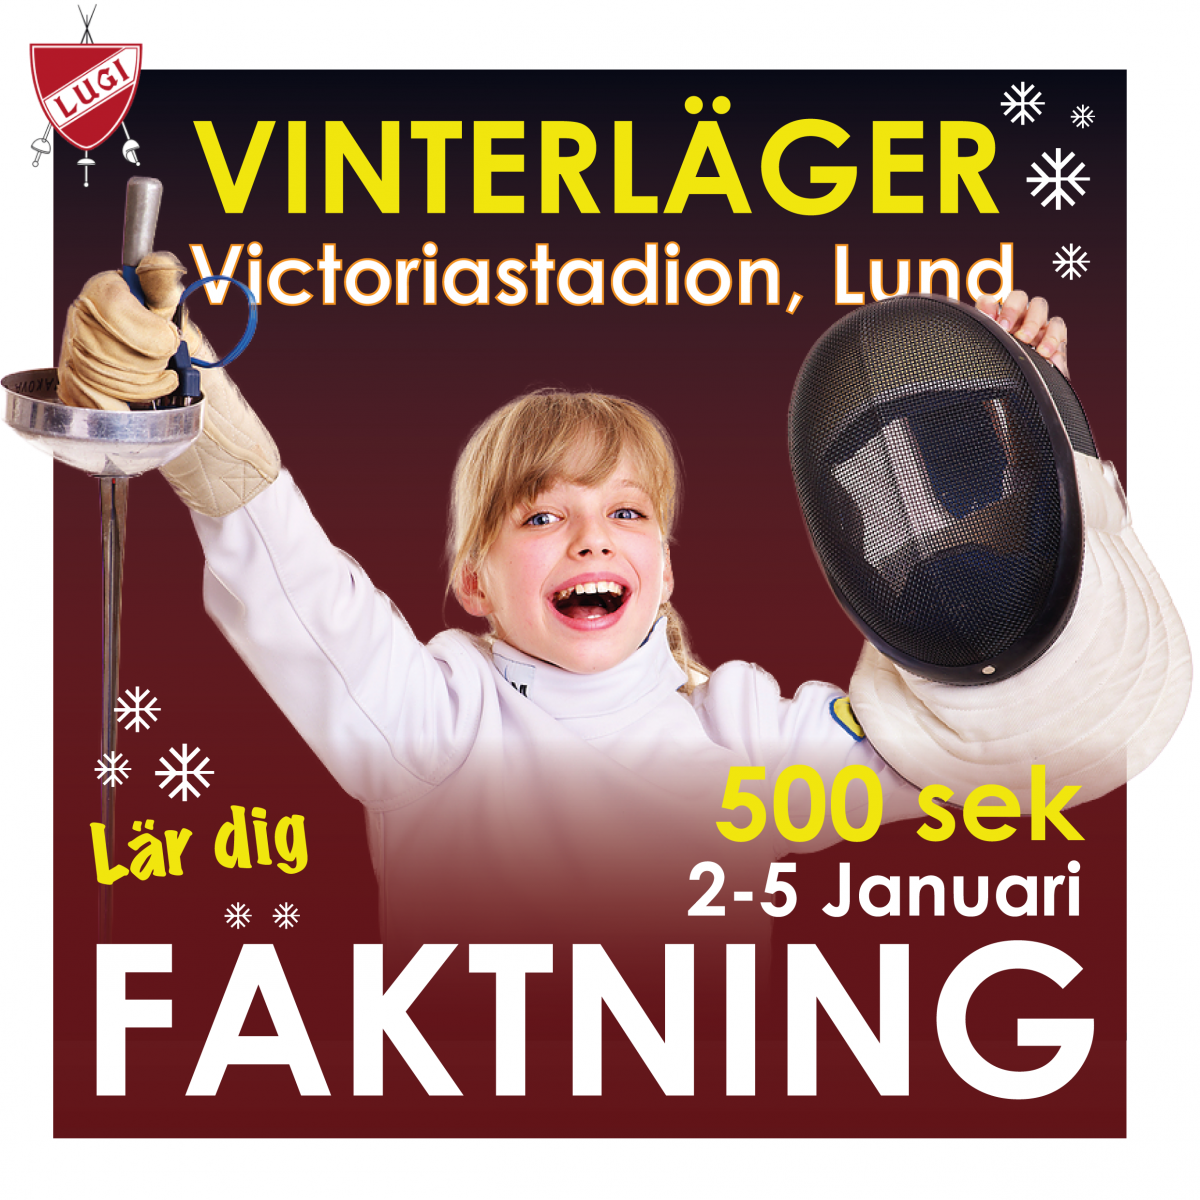 image: Vinterläger för nybörjare!